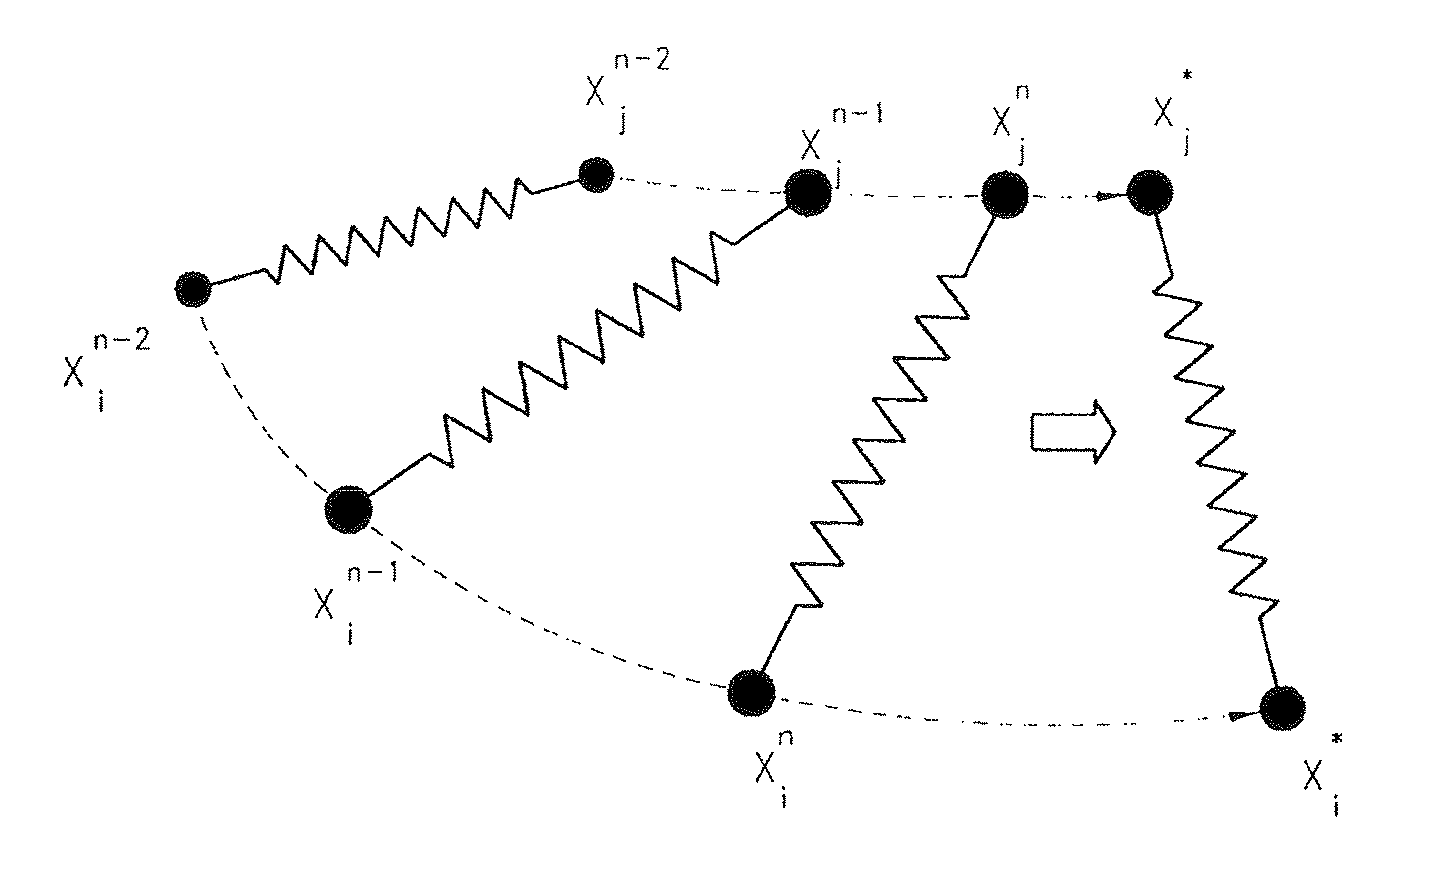 Method of cloth simulation using linear stretch/shear model